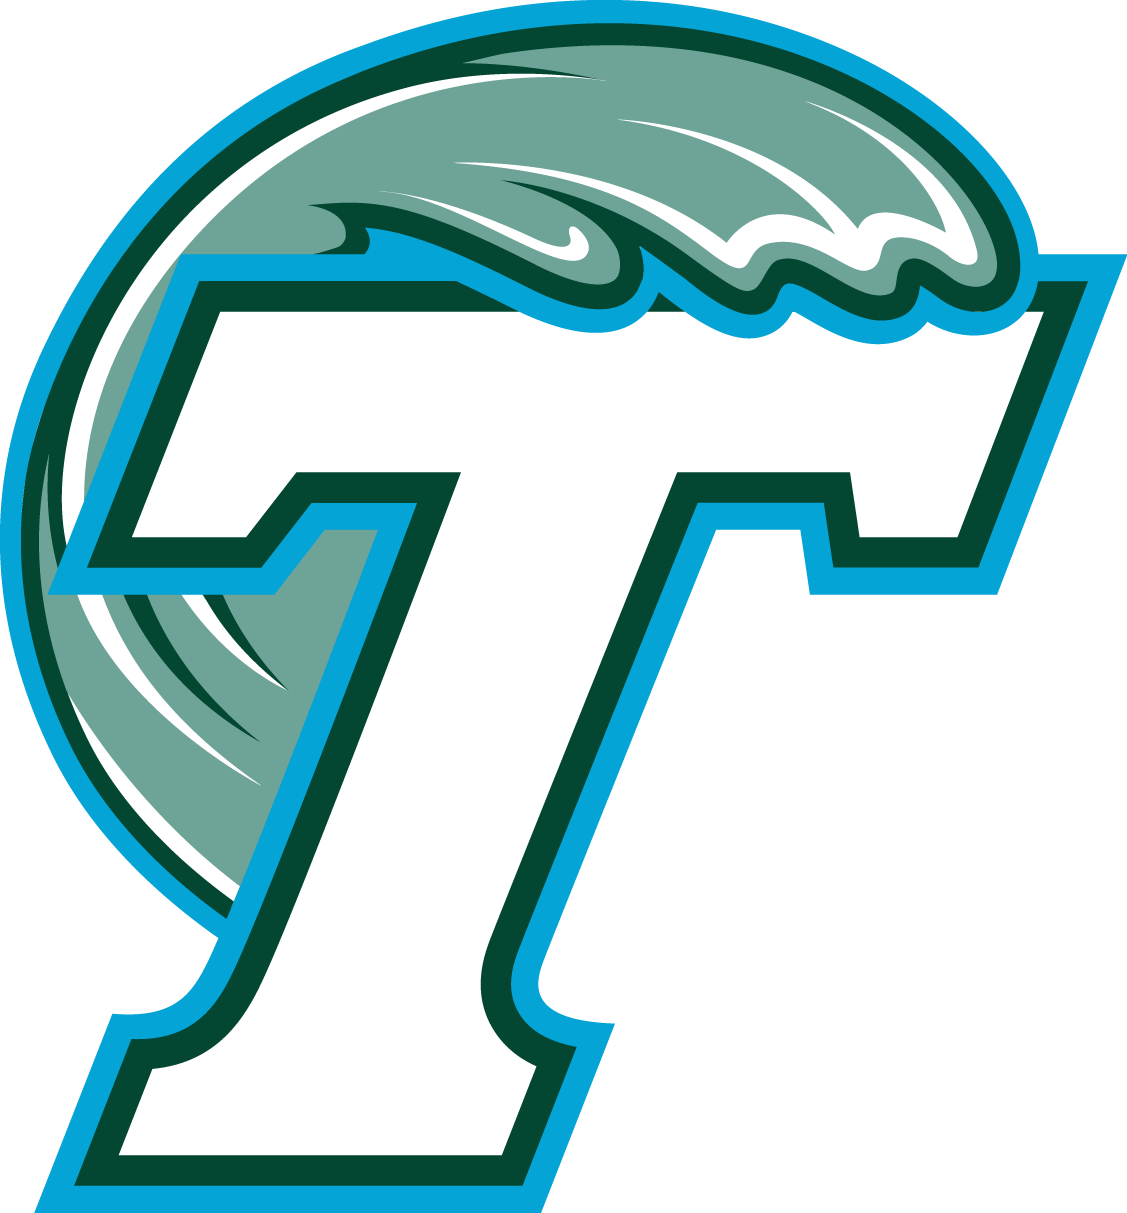 Tulane University - Tulane Green Wave Flag (1127x1213)